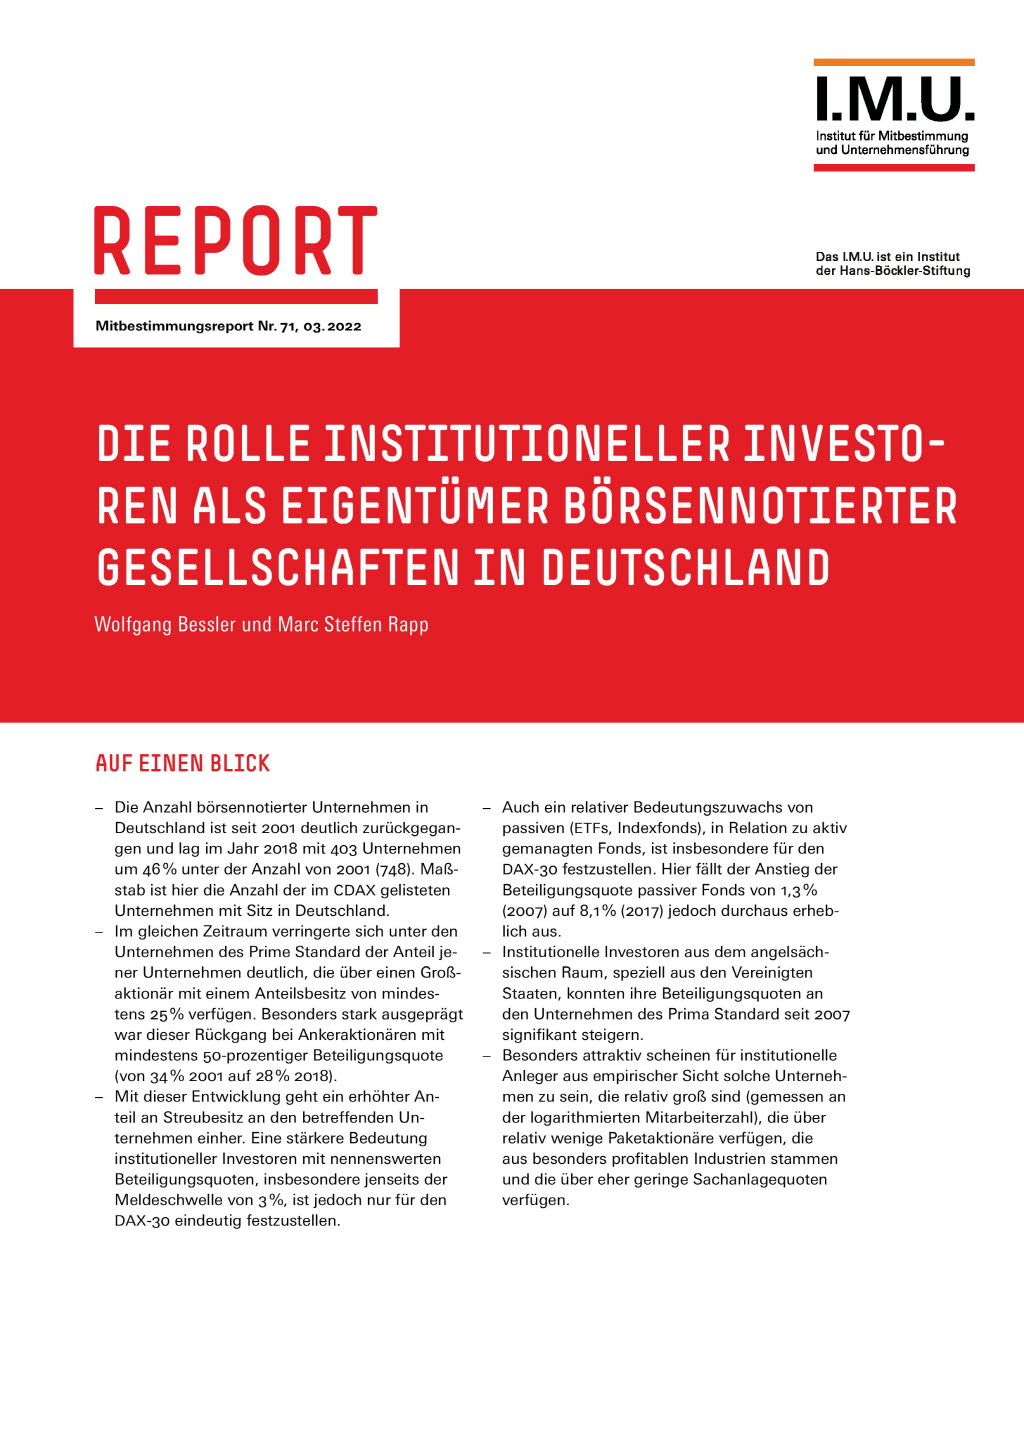 Die Rolle institutioneller Investoren als Eigentümer börsenorientierter Gesellschaften in Deutschland